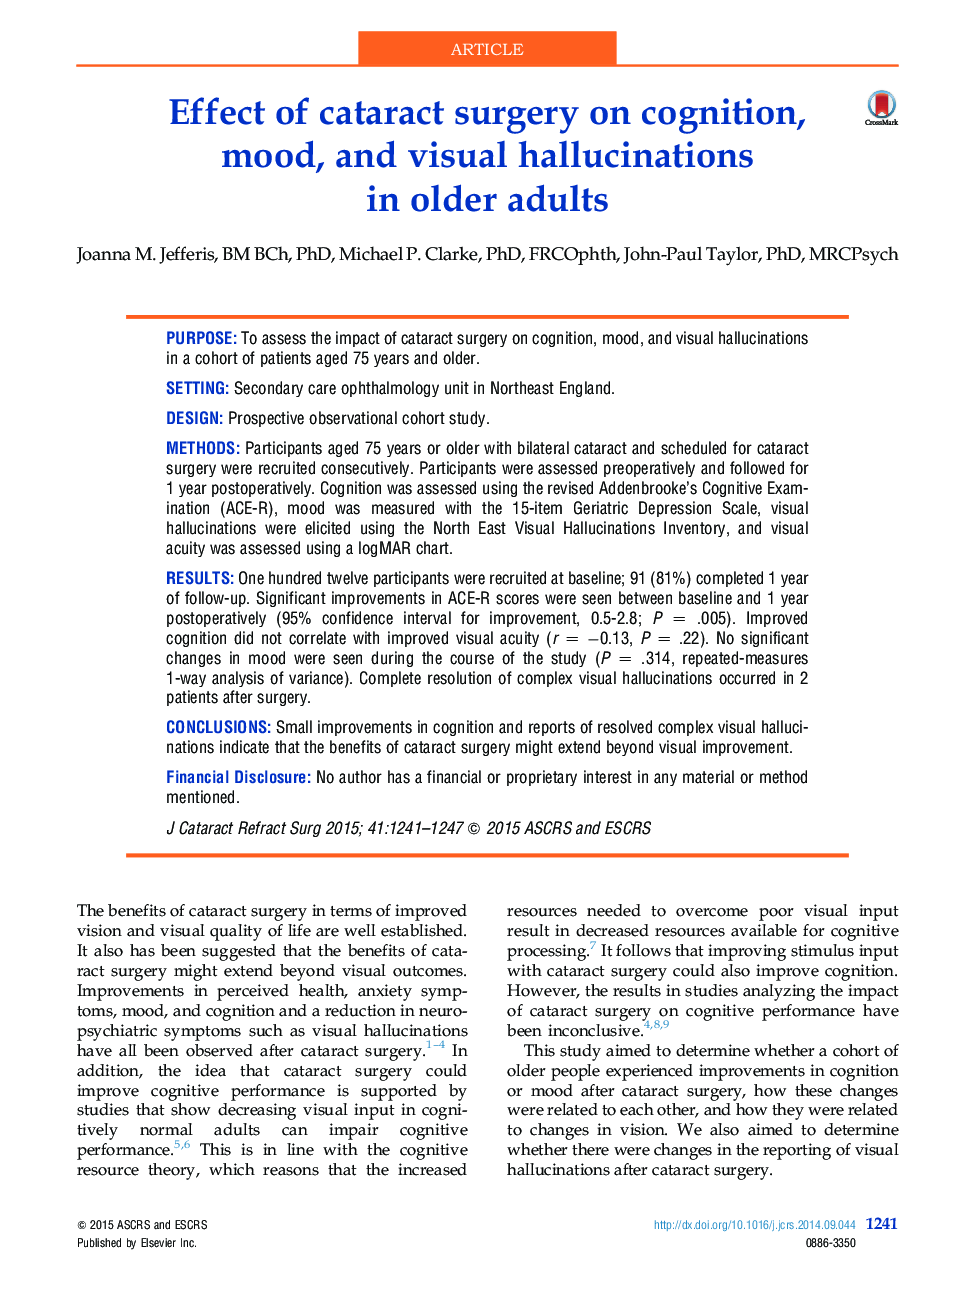 اثر جراحی آب مروارید در شناخت، خلق و خوی و تومورهای تصویری در افراد مسن 